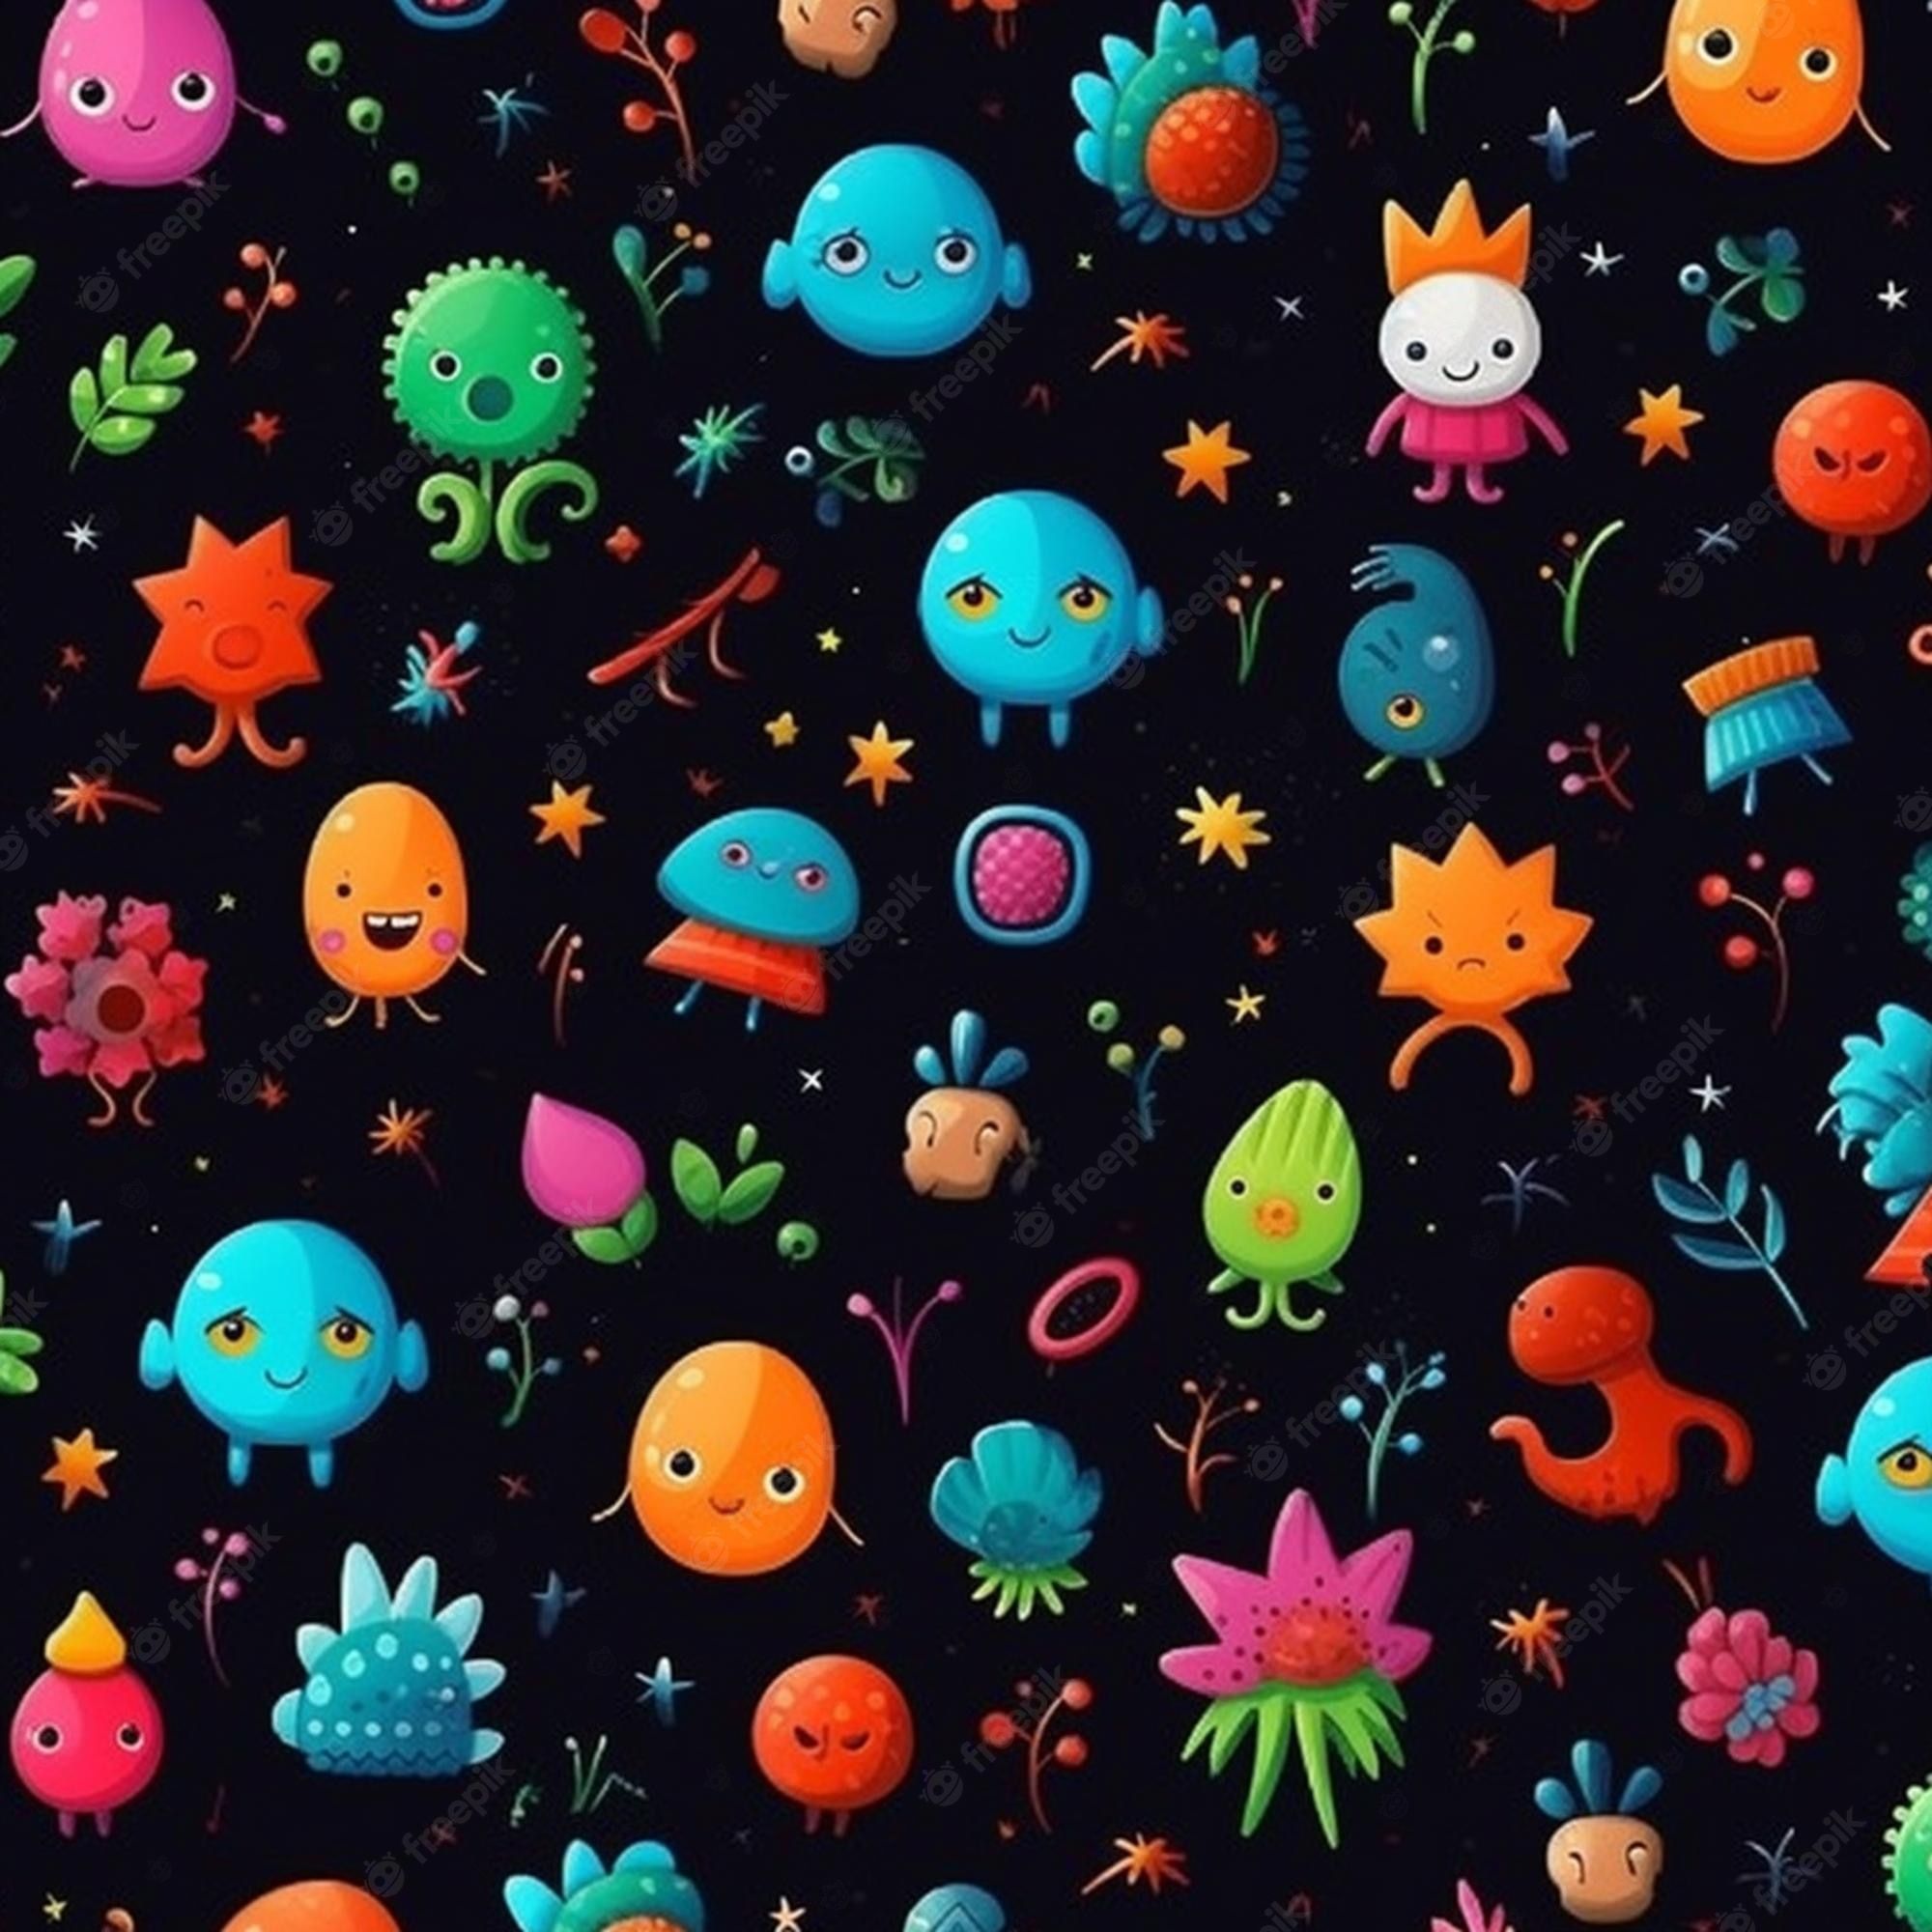 Cute Alien Wallpaper Image